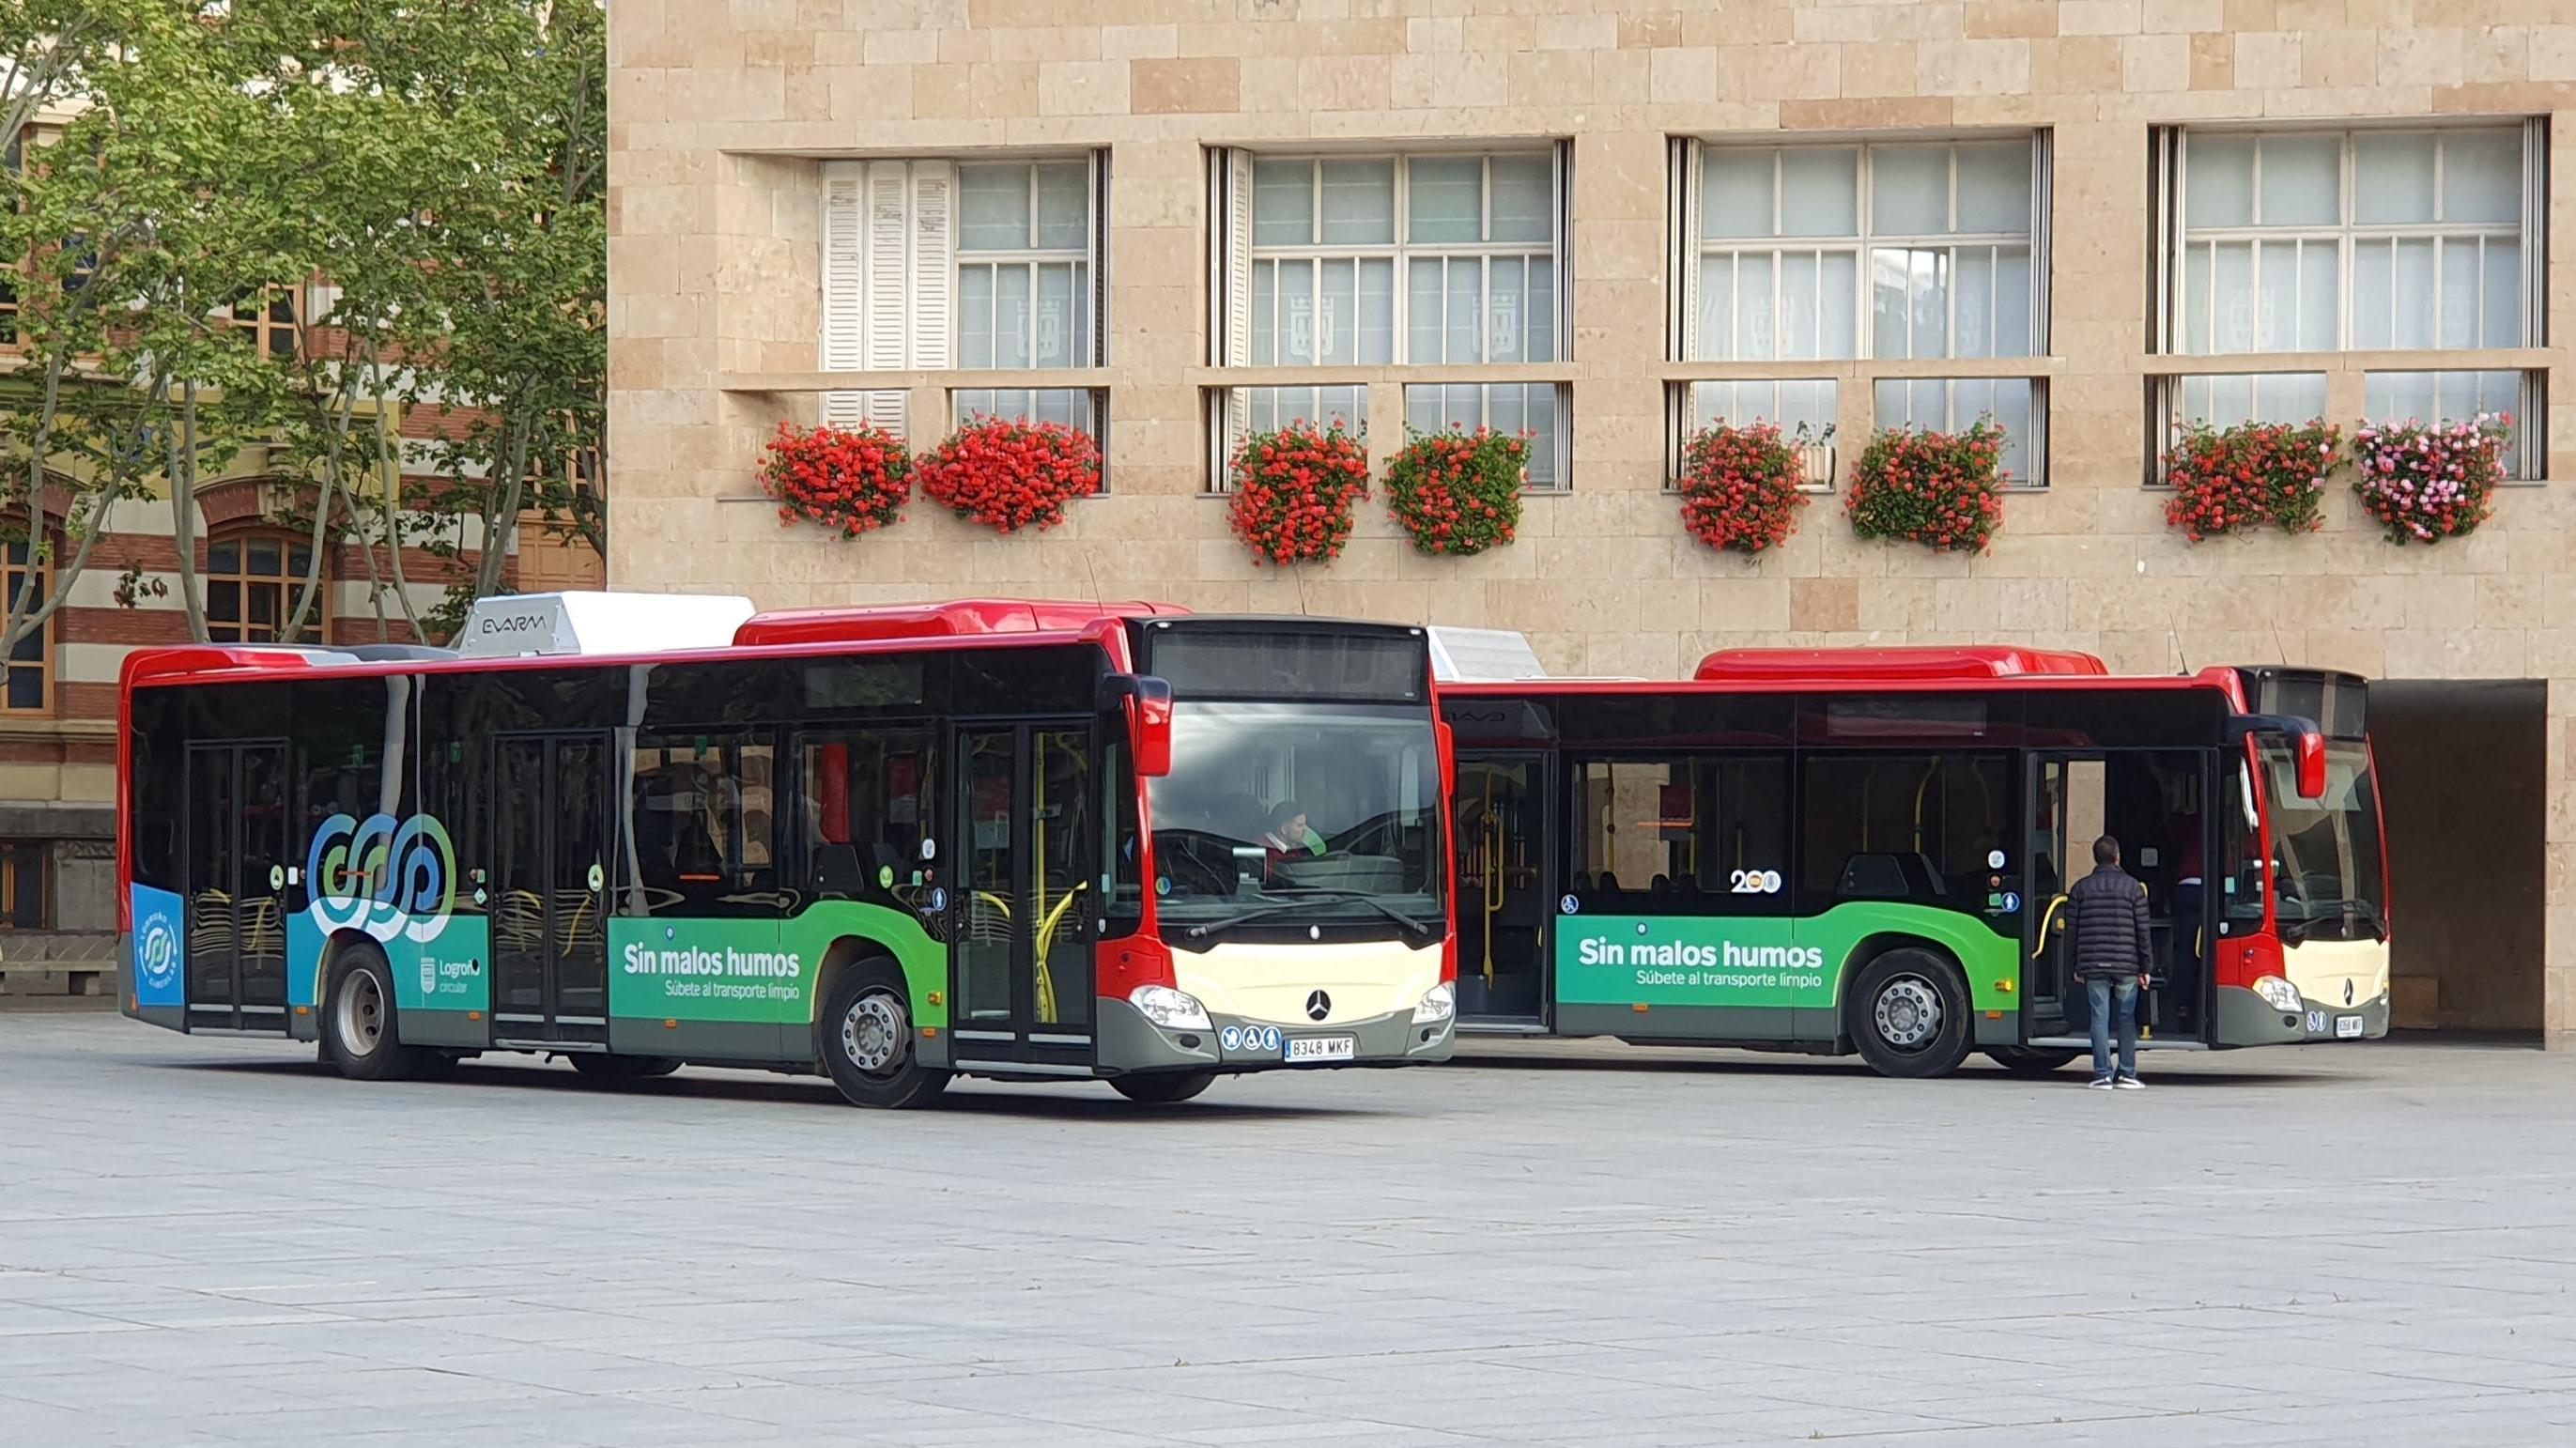 Coordinación de frecuencia en autobuses urbanos y bus circular